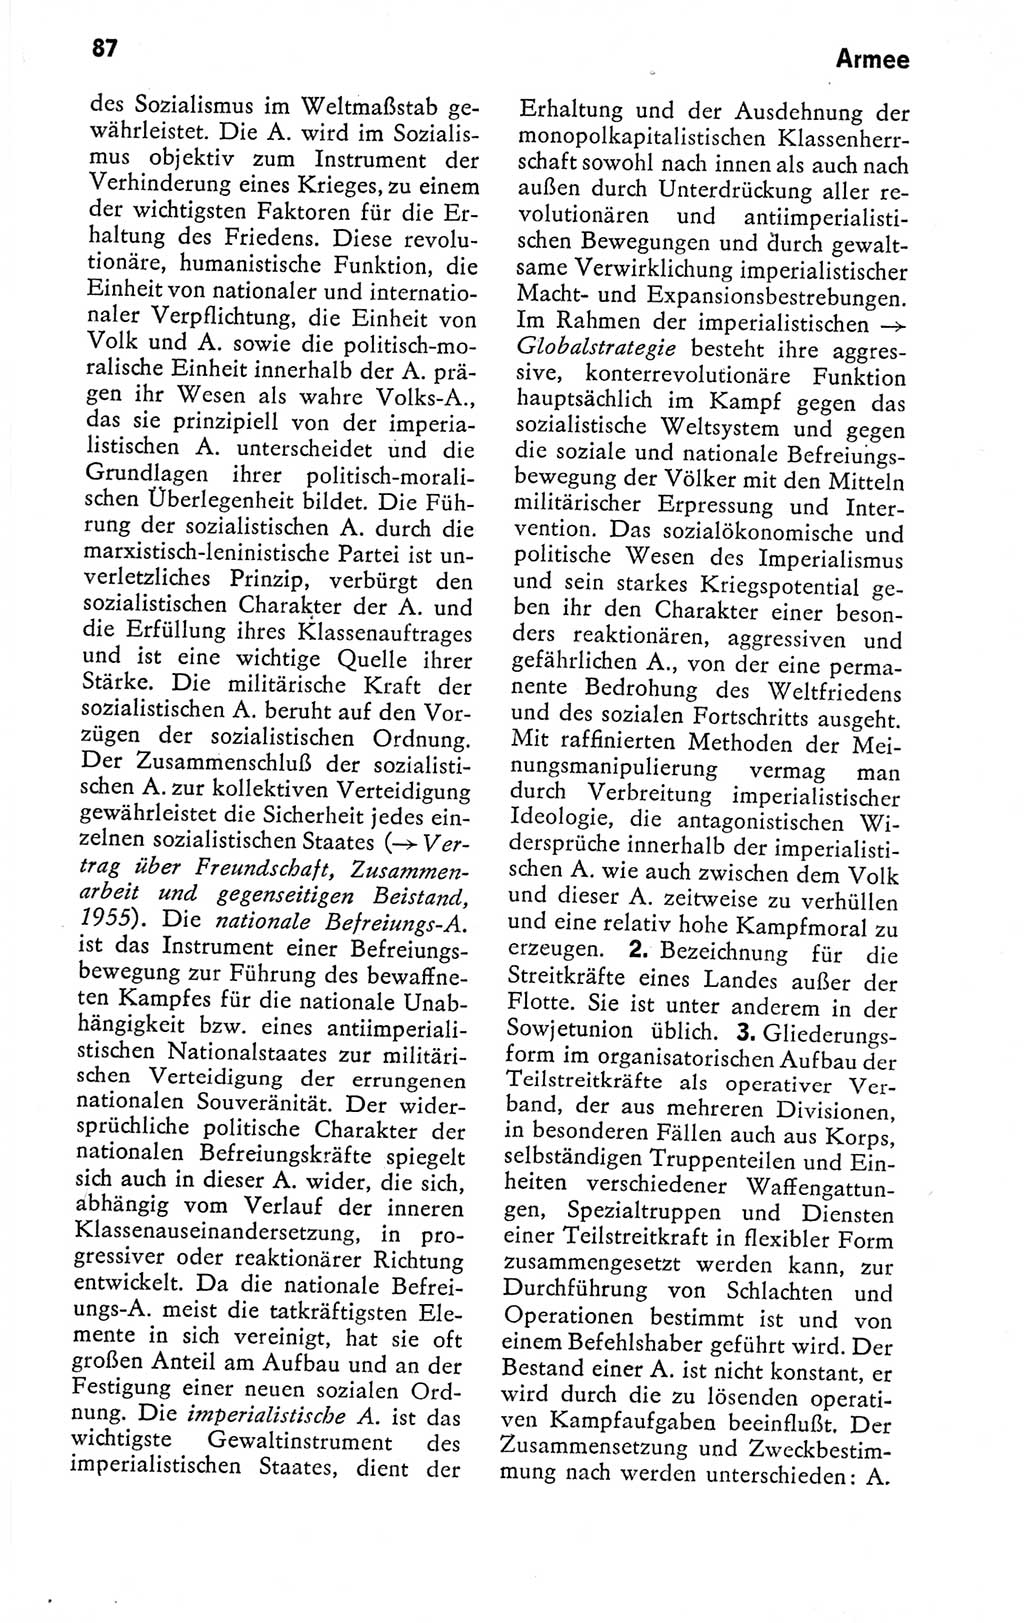 Kleines politisches Wörterbuch [Deutsche Demokratische Republik (DDR)] 1978, Seite 87 (Kl. pol. Wb. DDR 1978, S. 87)